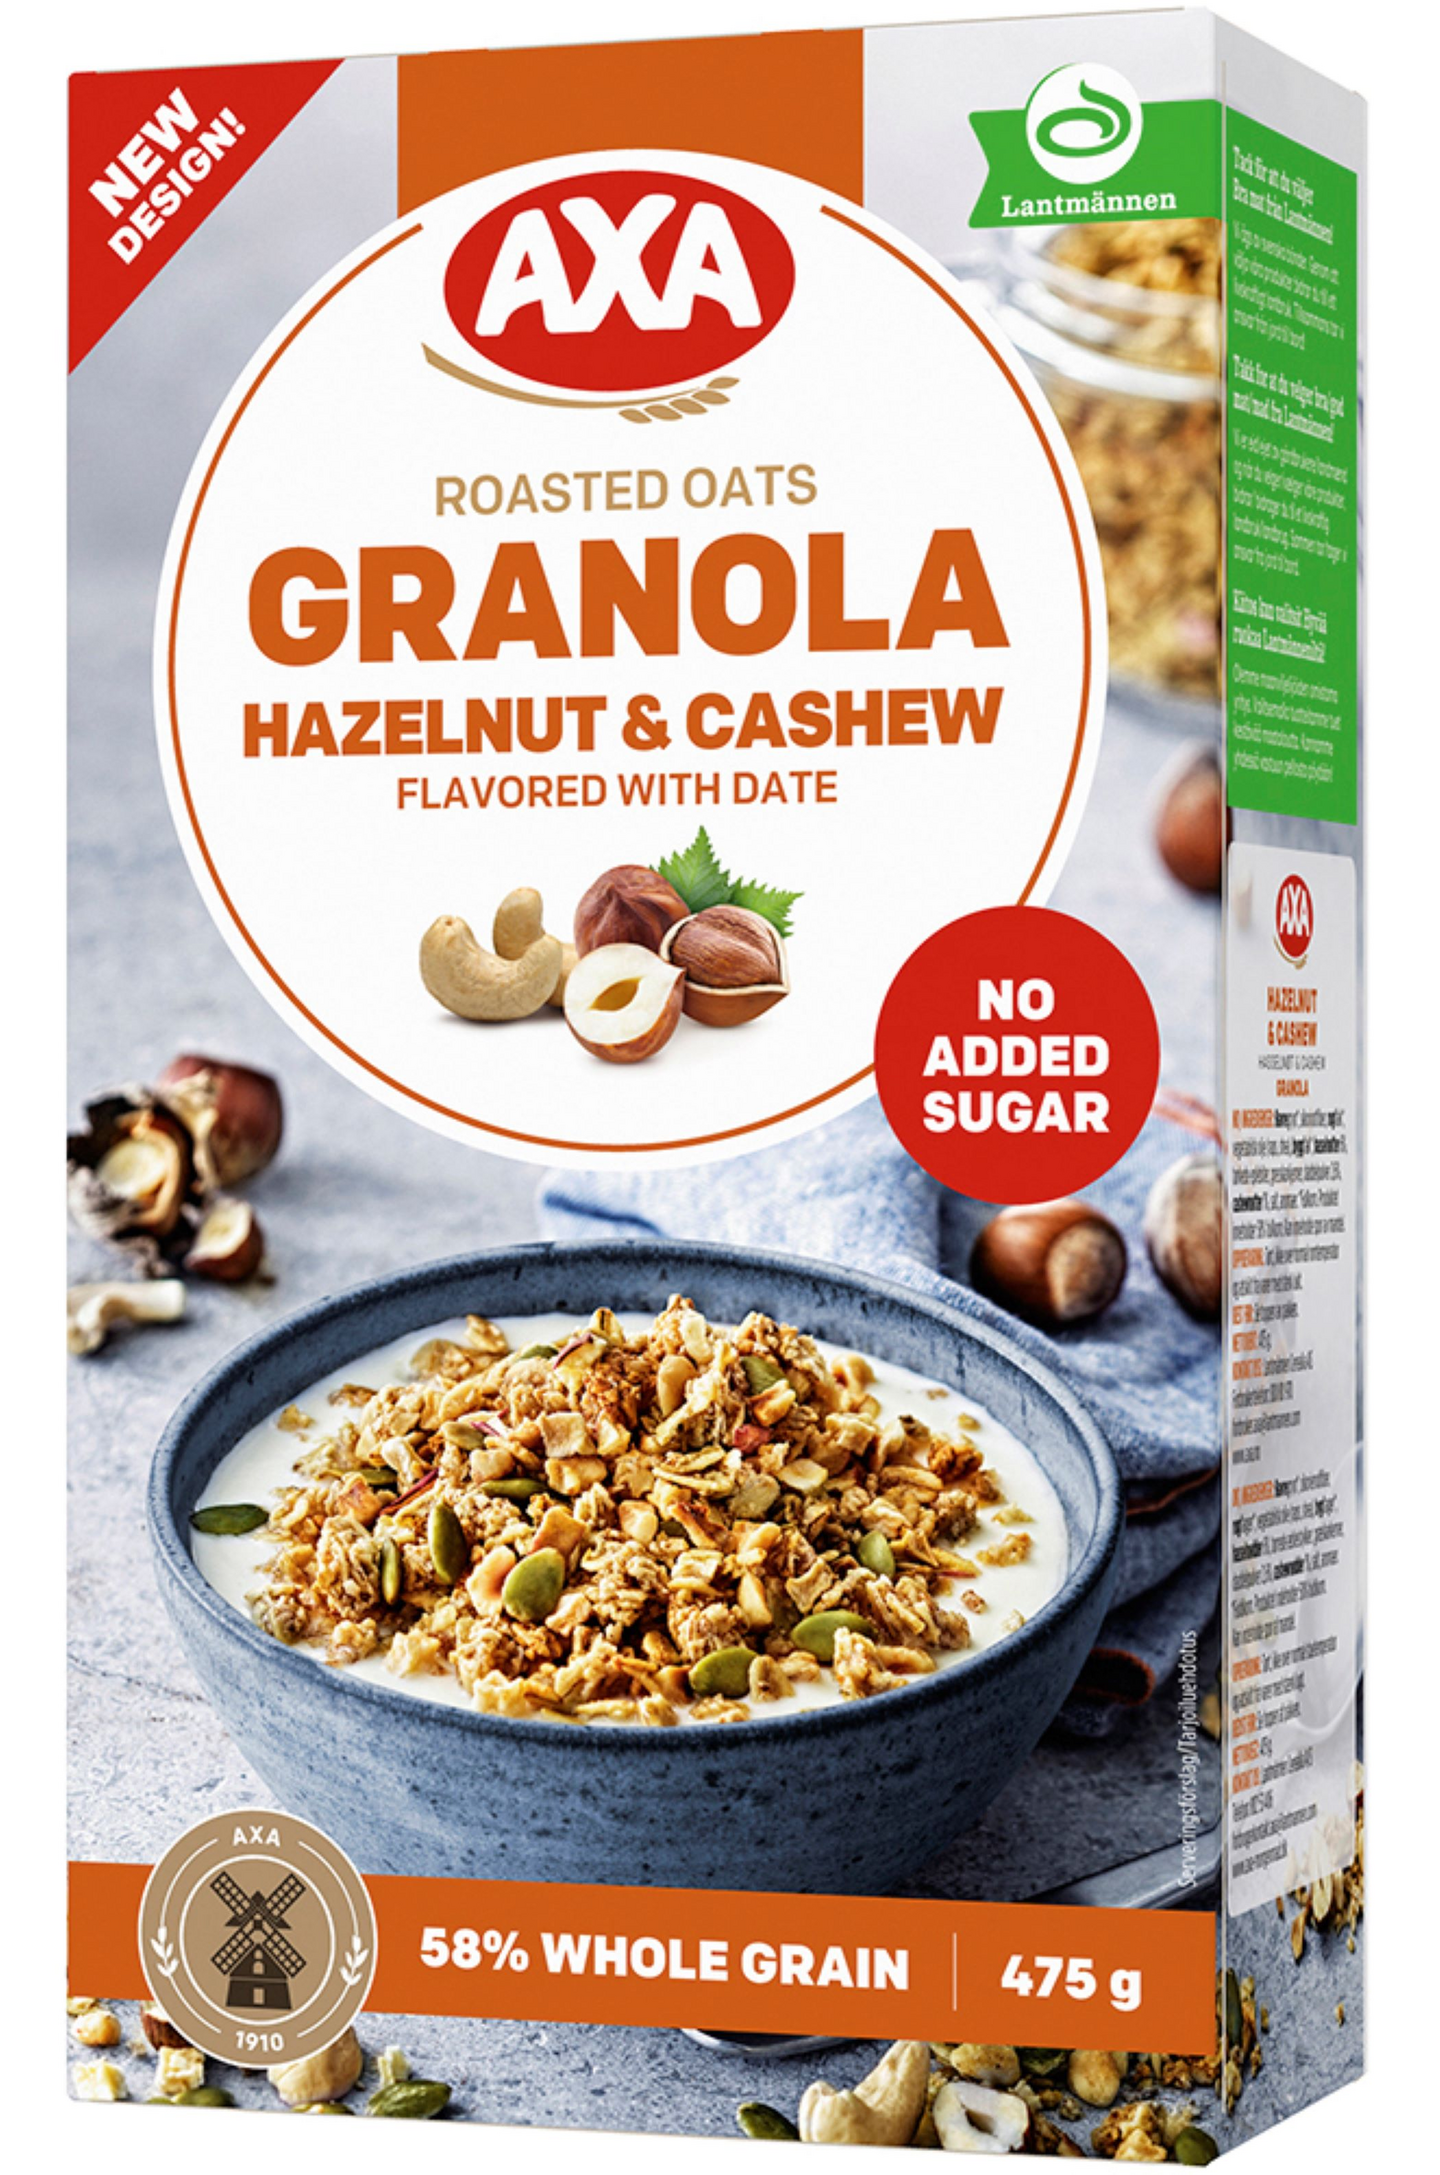 AXA Granola 475g hasselpähkinä & cashew